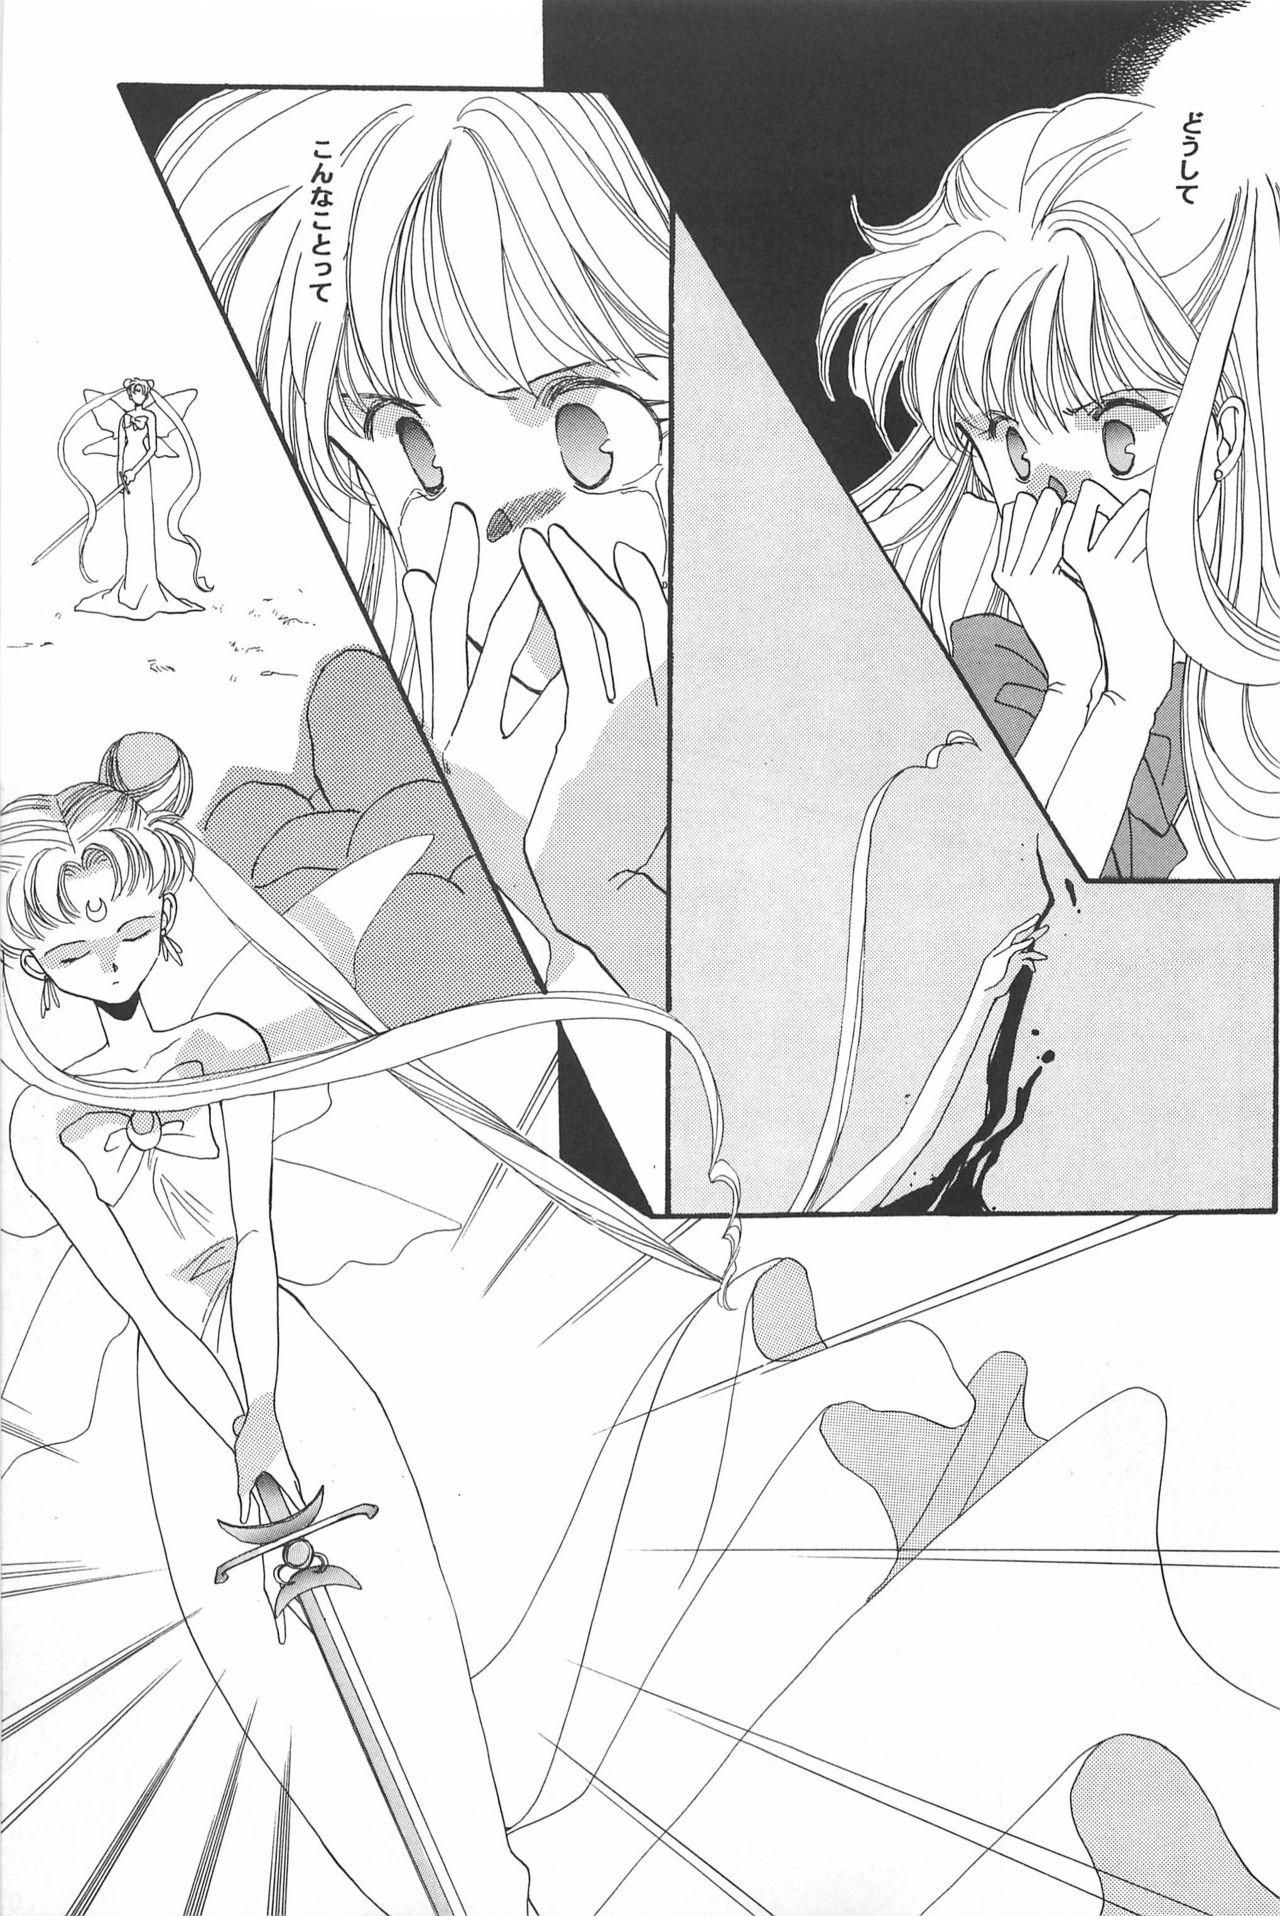 [Hello World (Muttri Moony)] Kaze no You ni Yume no You ni - Sailor Moon Collection (Sailor Moon) 106